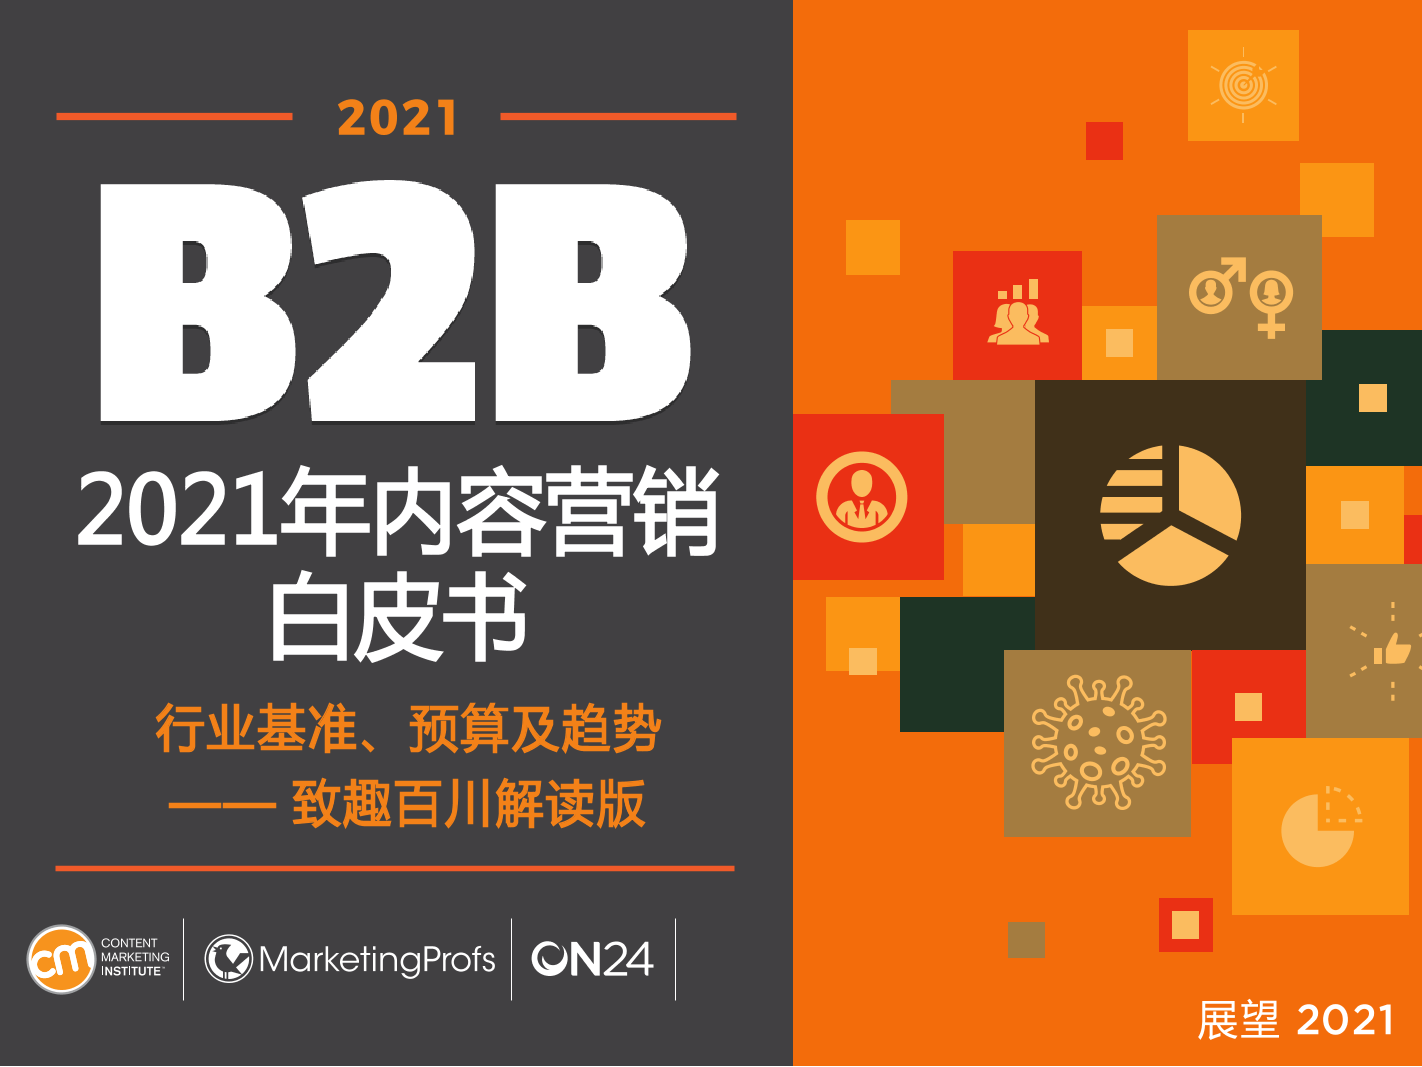 2021年B2B内容营销白皮书-致趣百川-2021-94页2021年B2B内容营销白皮书-致趣百川-2021-94页_1.png